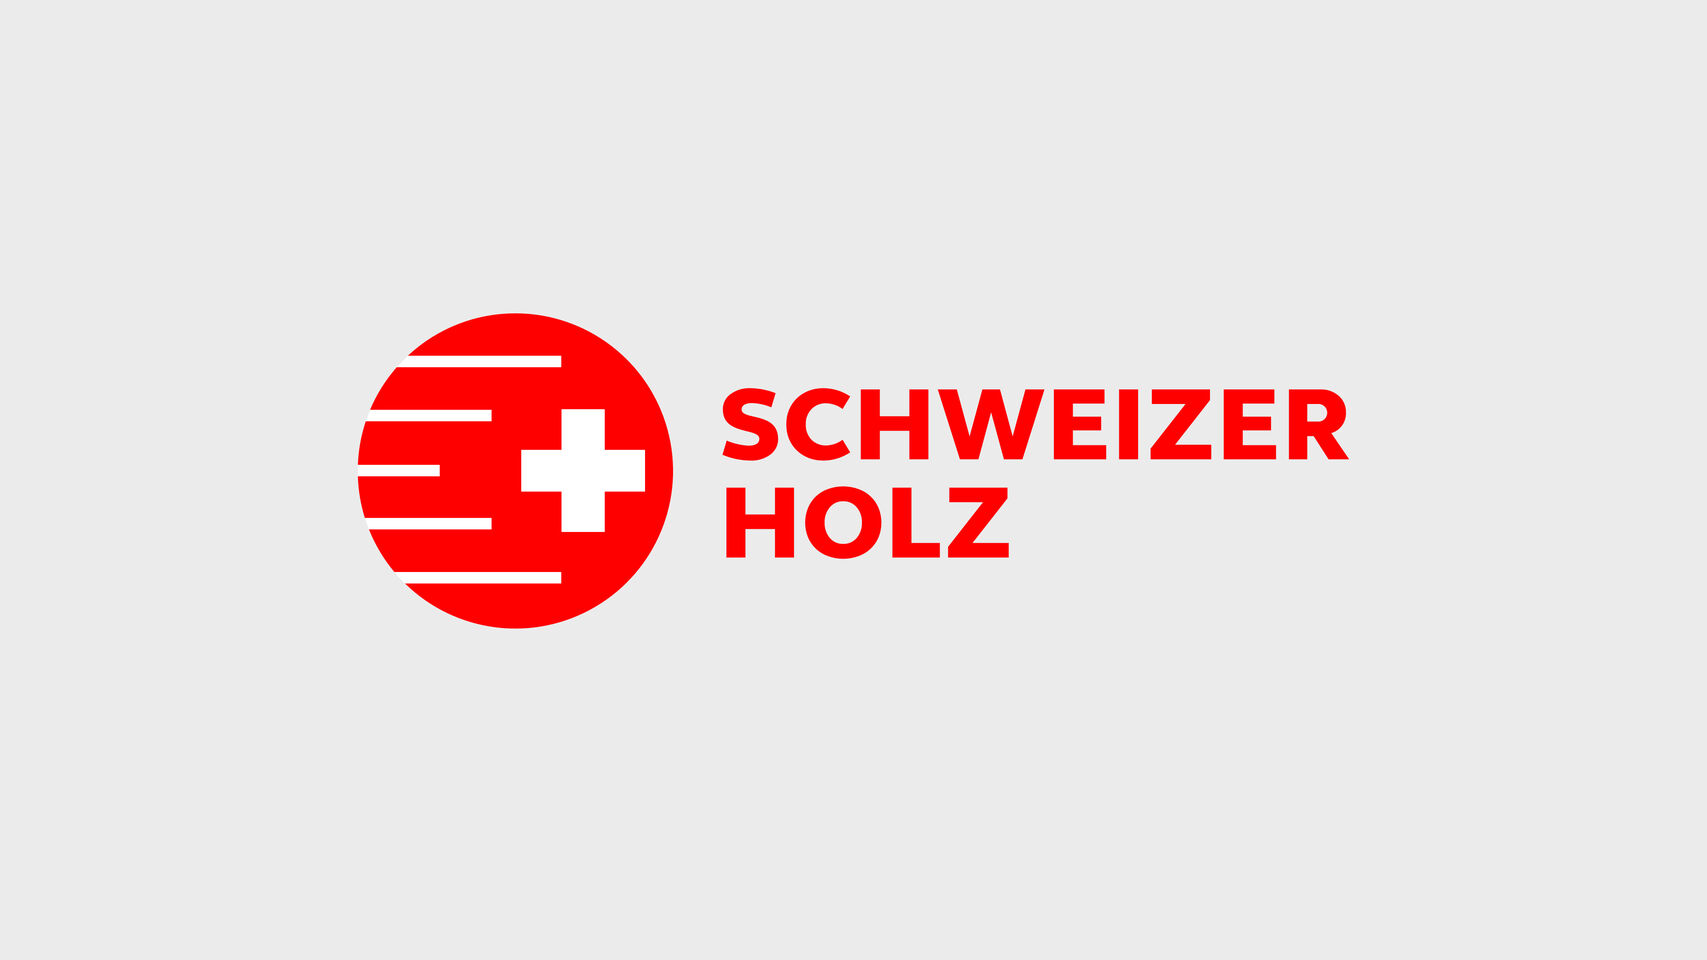 Schweizer Holz - Branding